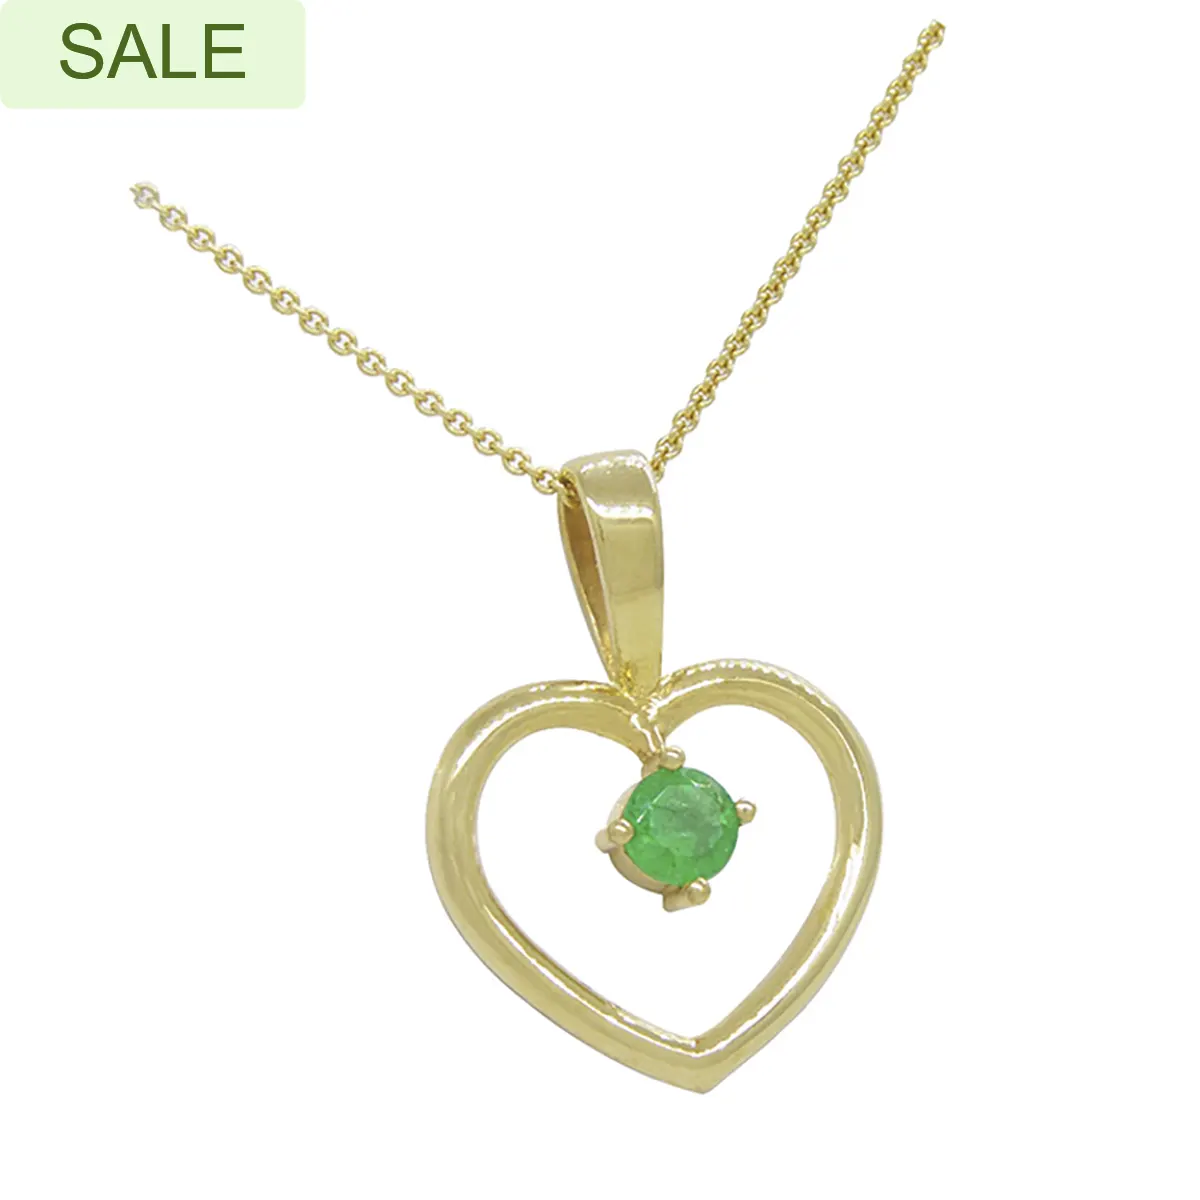 heart_shape_pendant_necklace_gold_plated_necklace_sale.webp